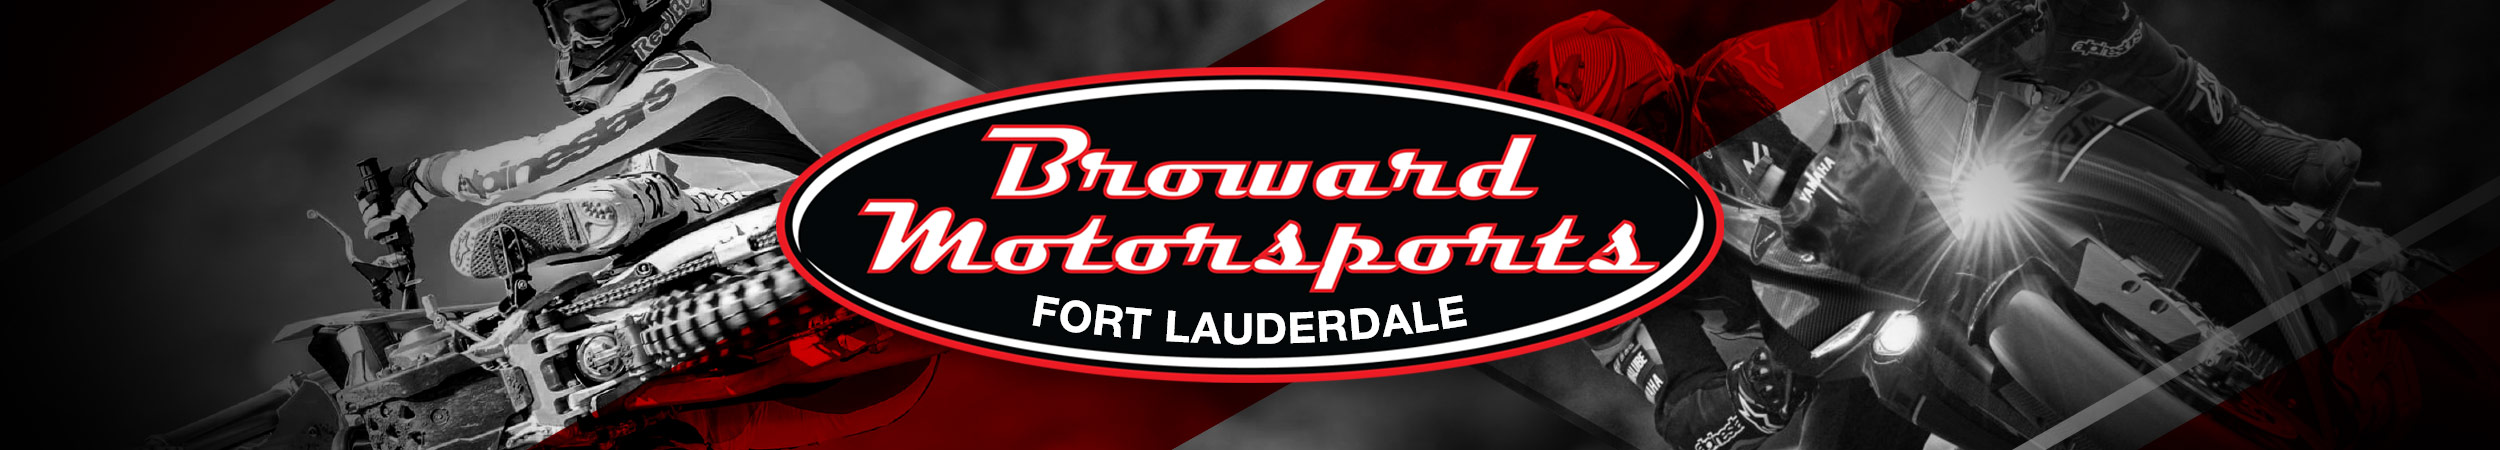 Broward Motorsports Fort Lauderdale